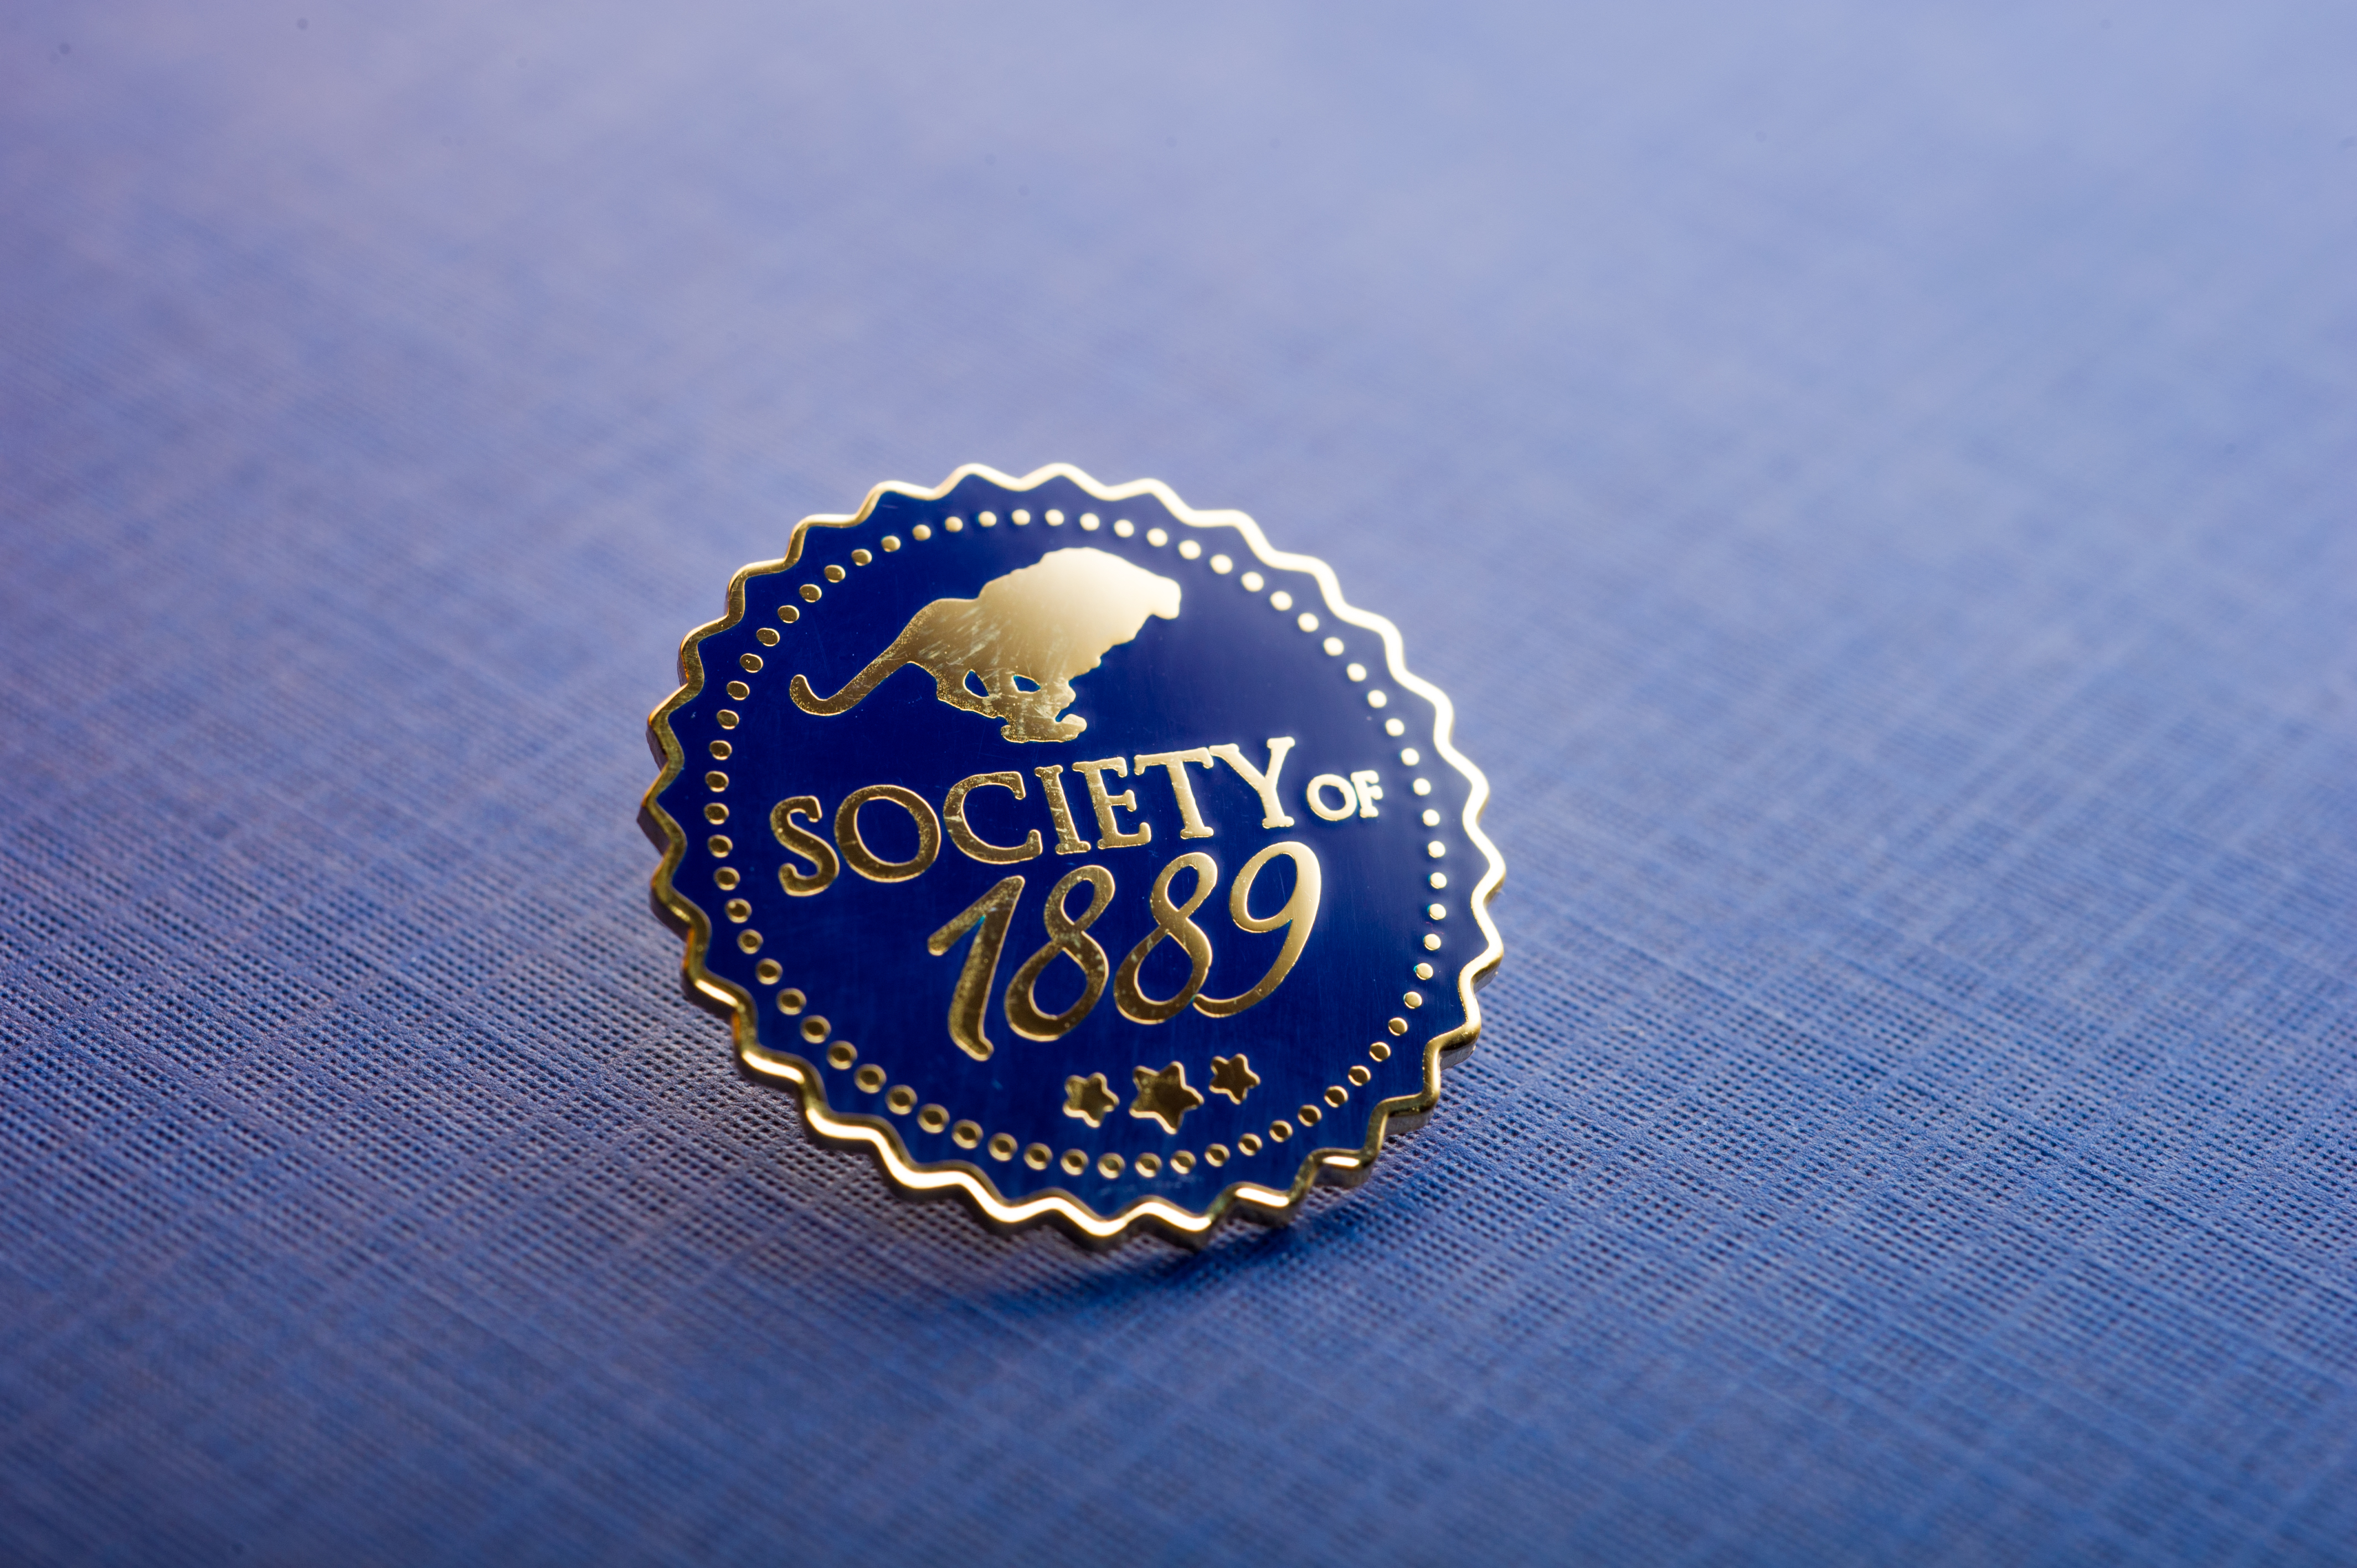 Society of 1889 pin